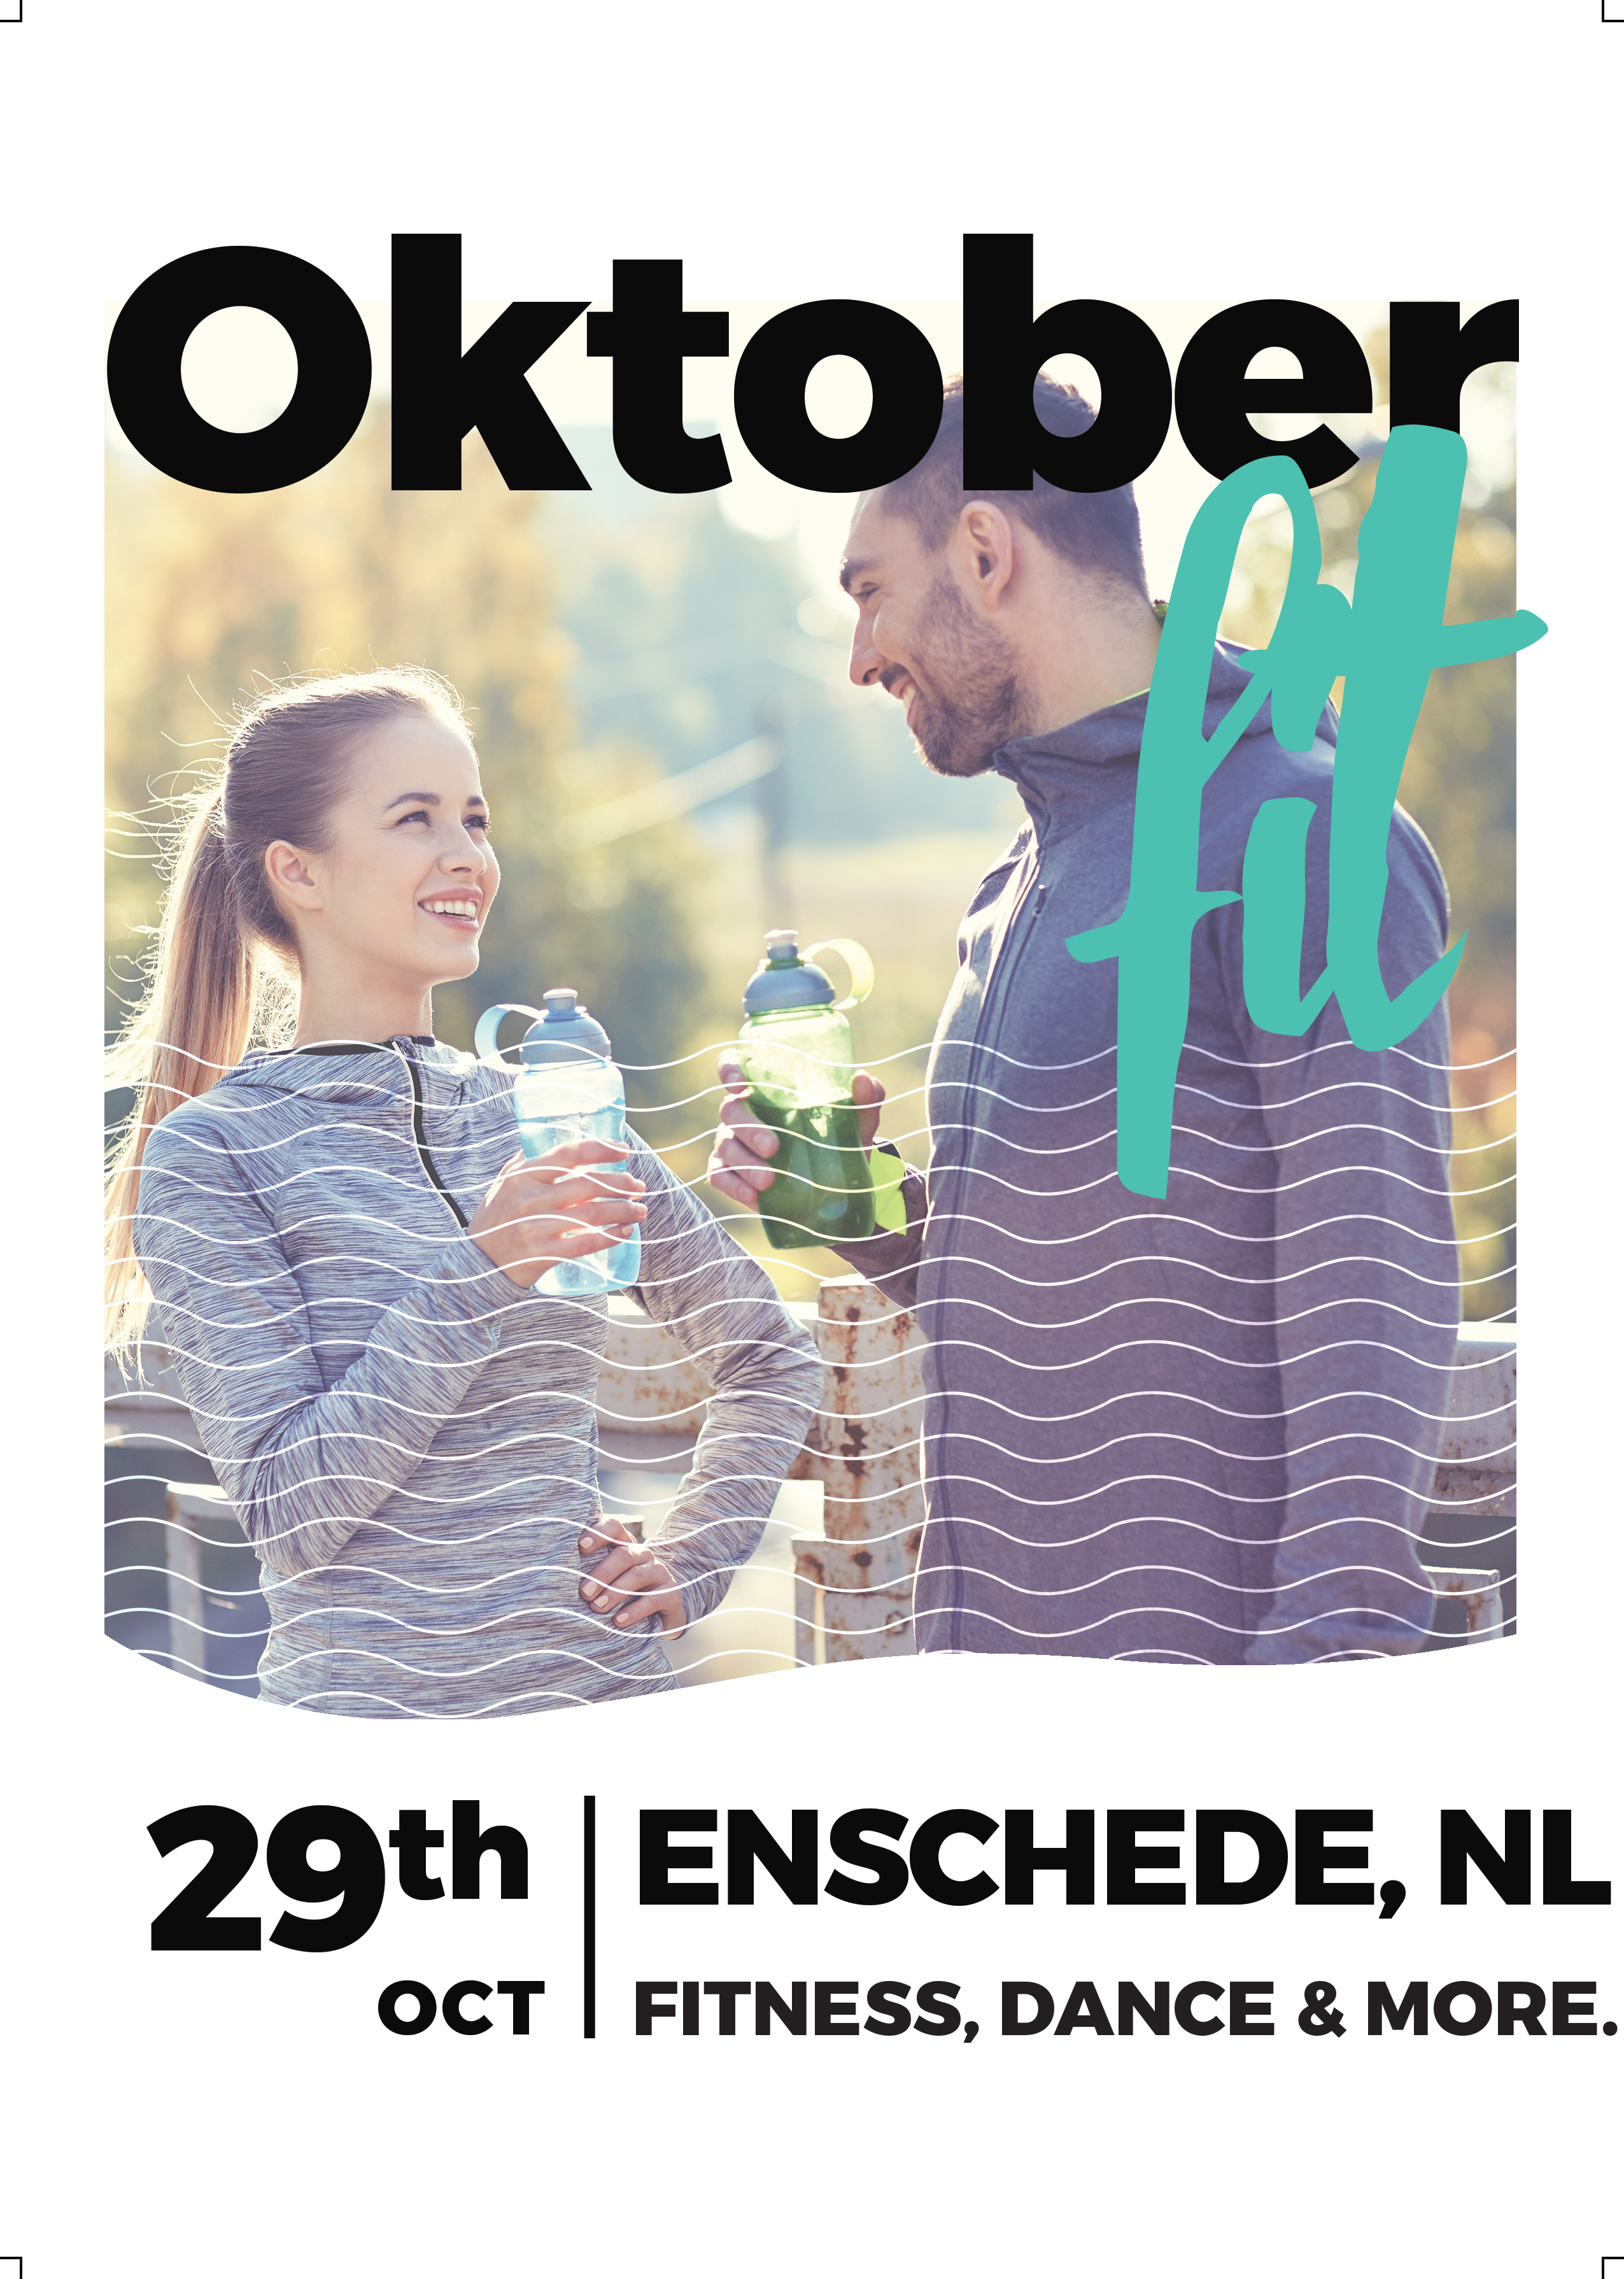 (c) Oktoberfit.nl